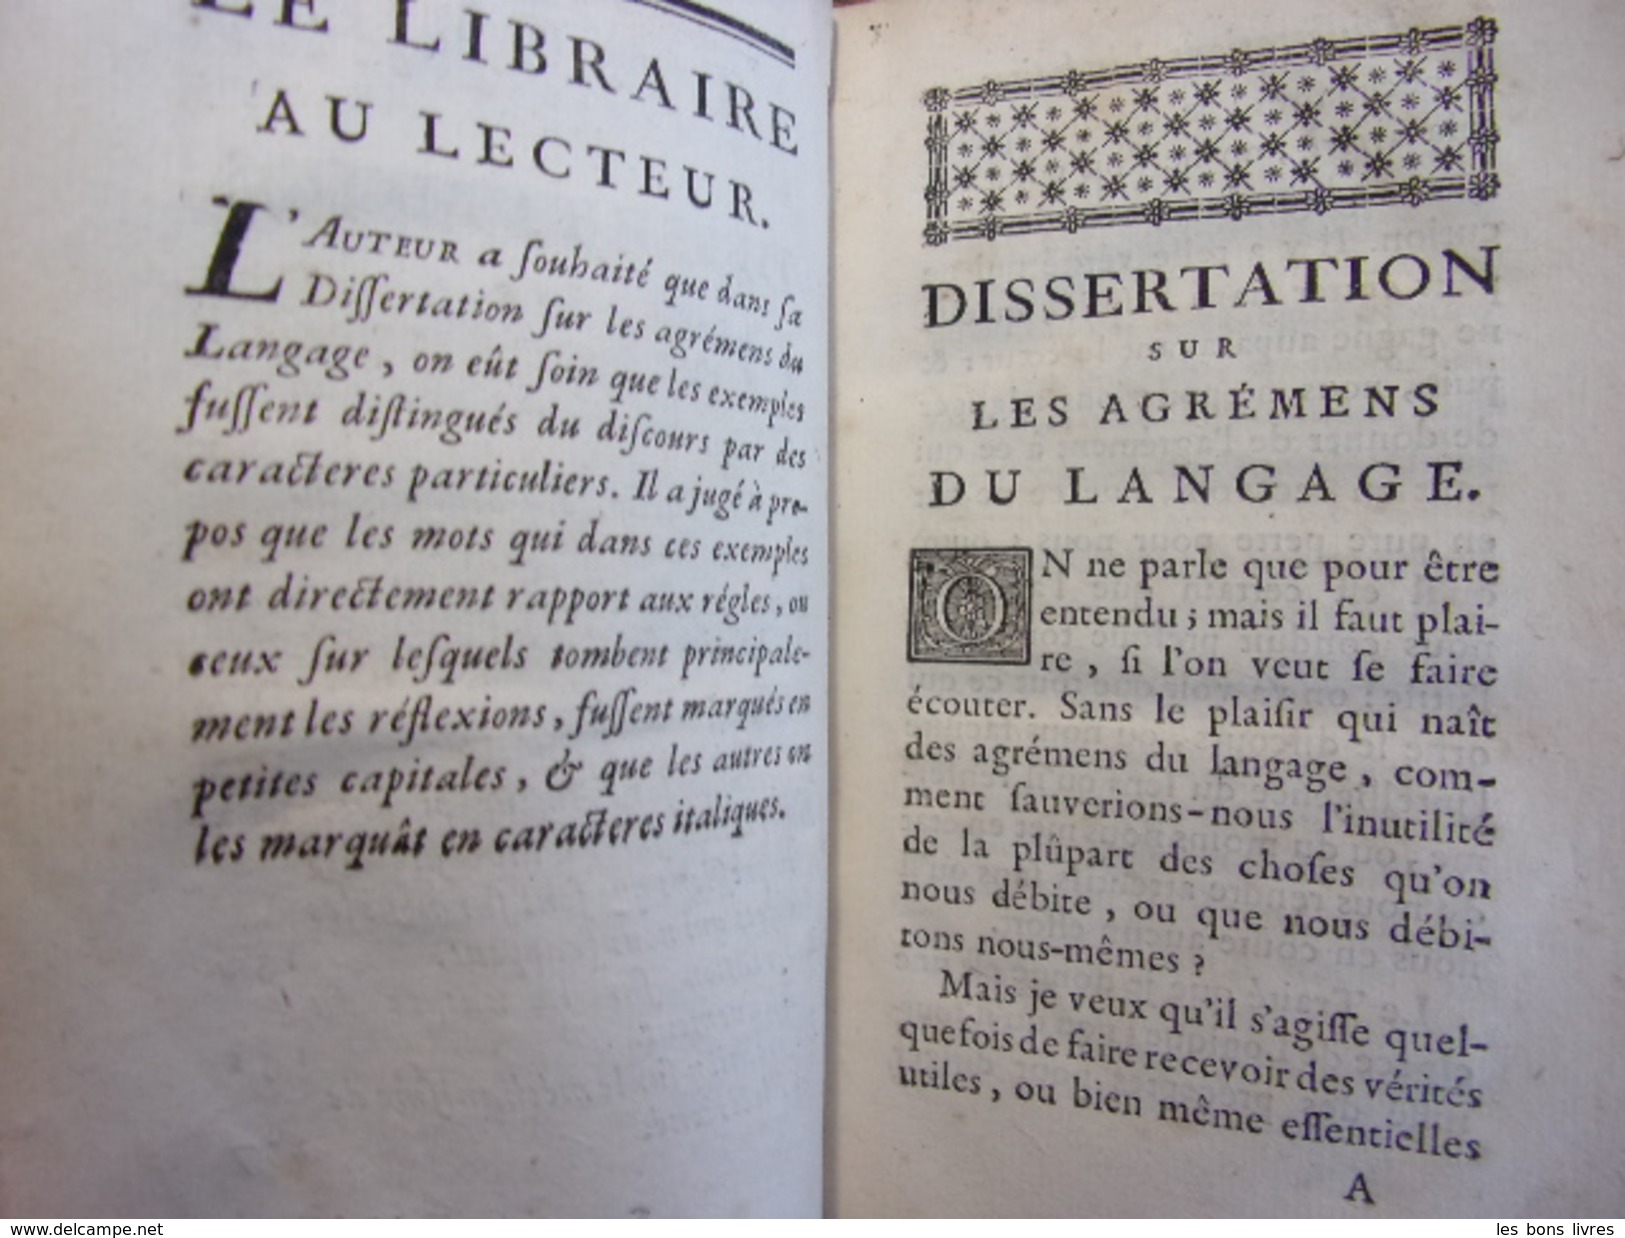 Les Agrémens Du Langage & Les Bautez Et Défauts De La Poésie M. De Gamaches, MDCCXLIX - Before 18th Century